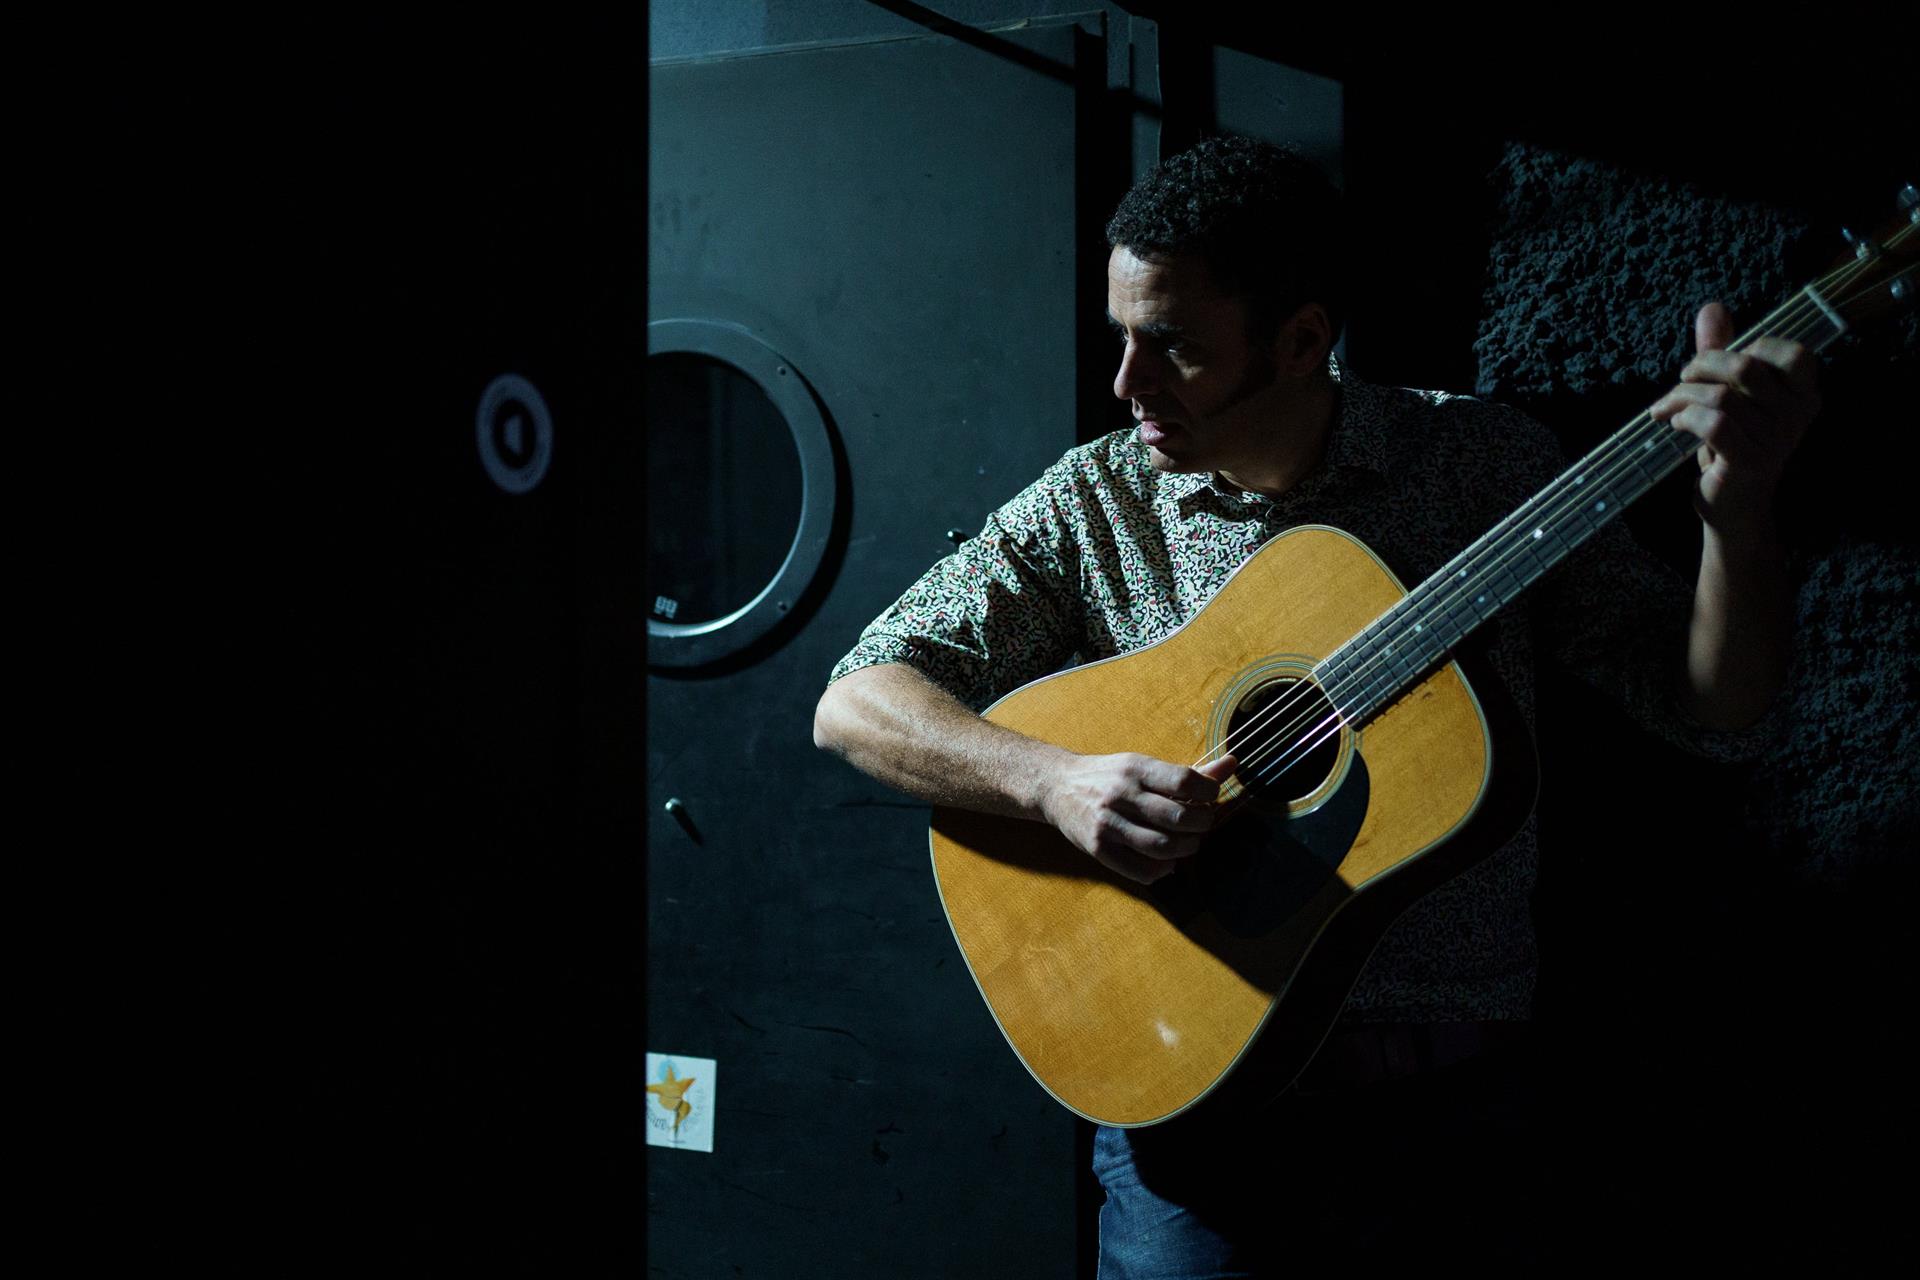 El cantante Depedro ha presentado el concierto que ofrece este viernes en el Espacio Cultural Aguere de La Laguna (Tenerife), con temas de su último trabajo de estudio "Máquina de piedad". EFE/Ramón de la Rocha